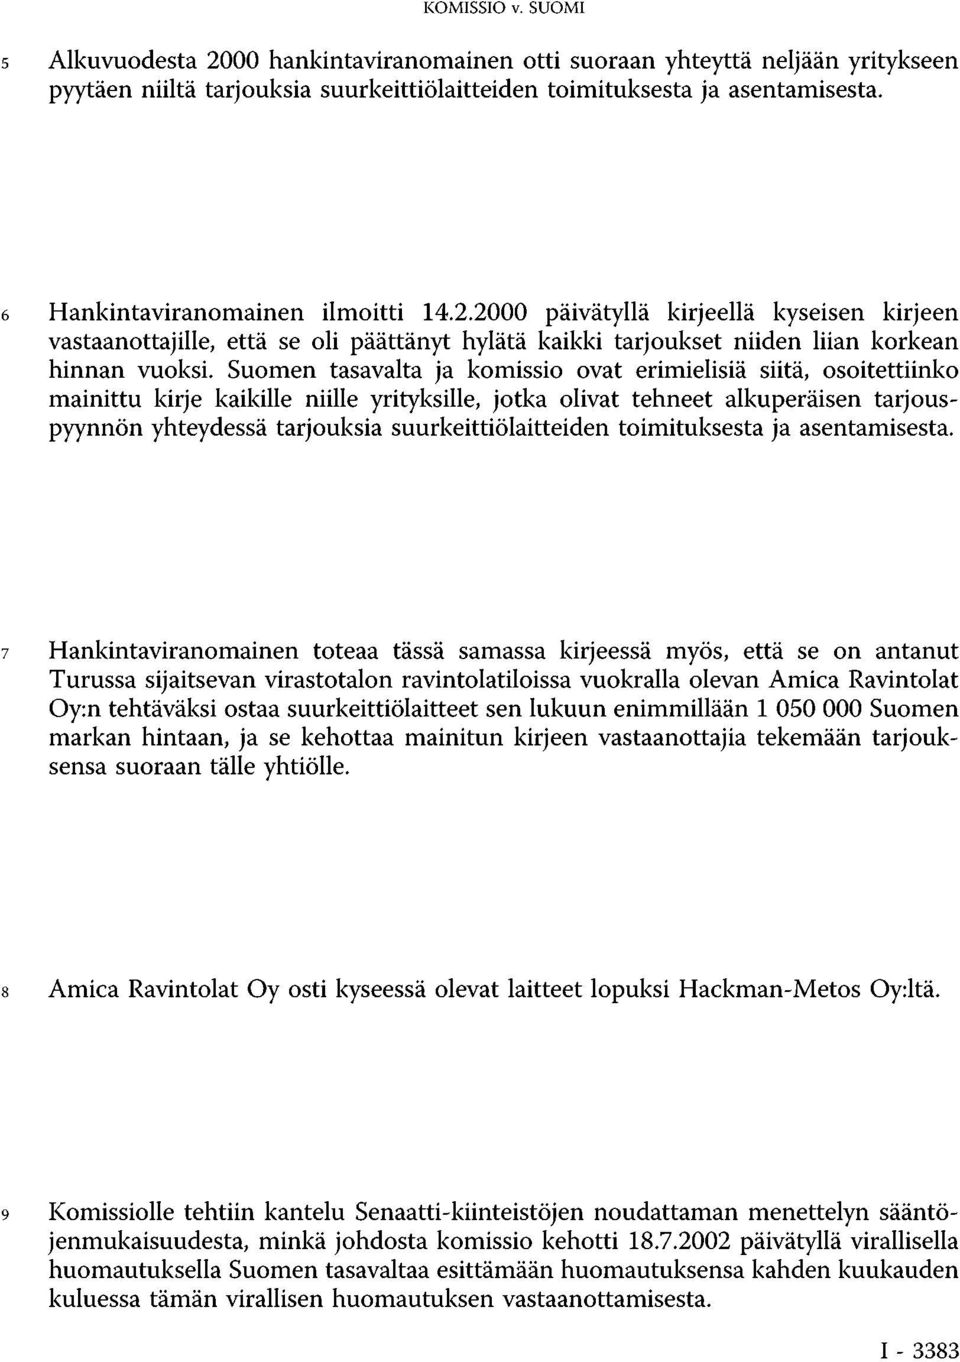 Suomen tasavalta ja komissio ovat erimielisiä siitä, osoitettiinko mainittu kirje kaikille niille yrityksille, jotka olivat tehneet alkuperäisen tarjouspyynnön yhteydessä tarjouksia